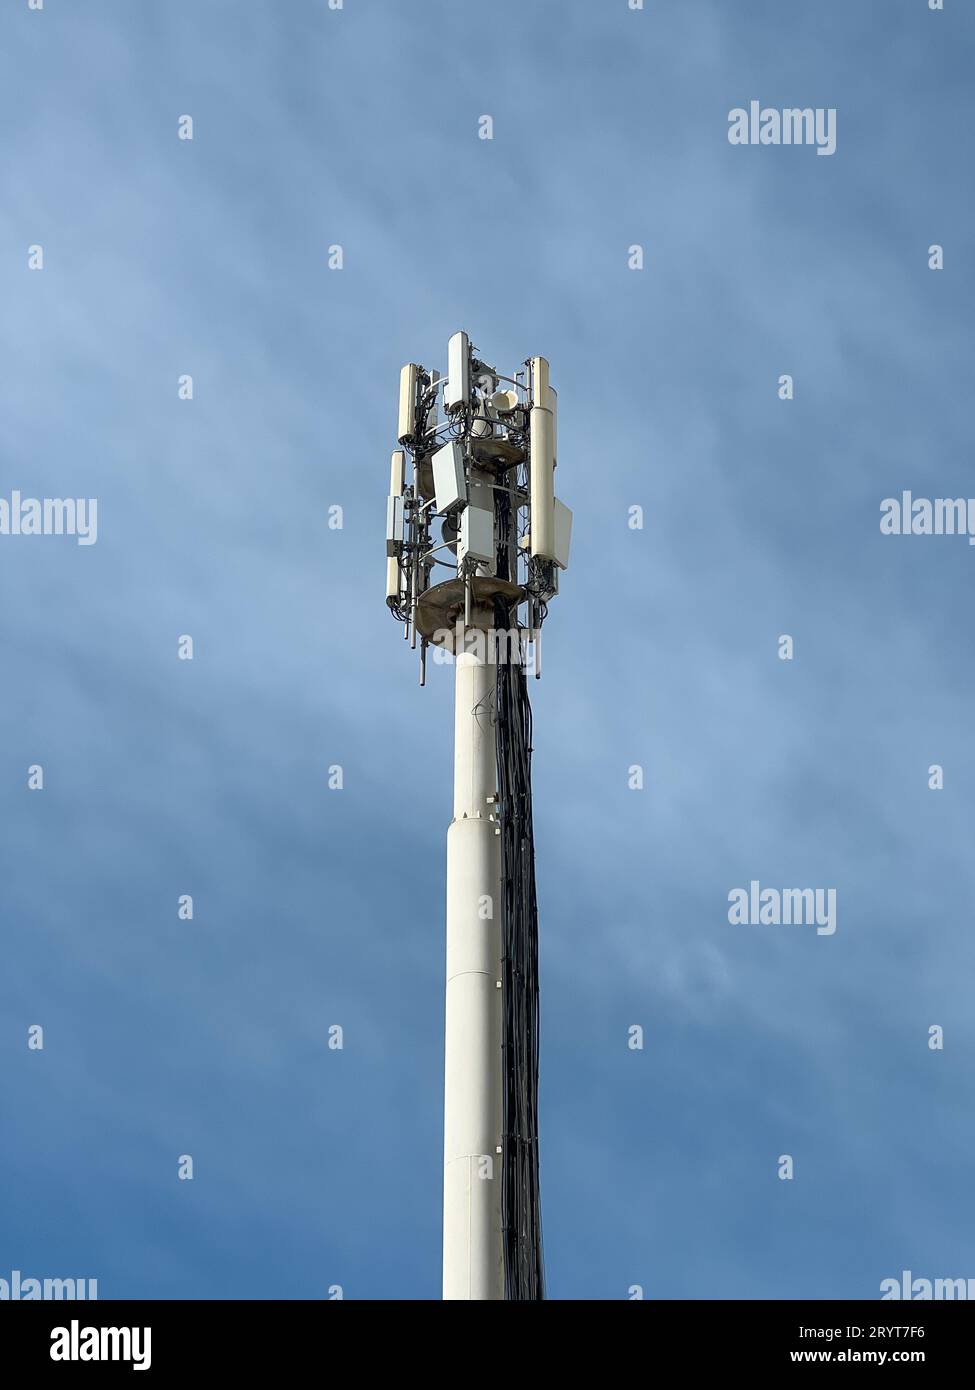 Estructura de torre de telecomunicaciones con múltiples antenas de transmisión y receptor con un fondo azul del cielo. Foto de stock